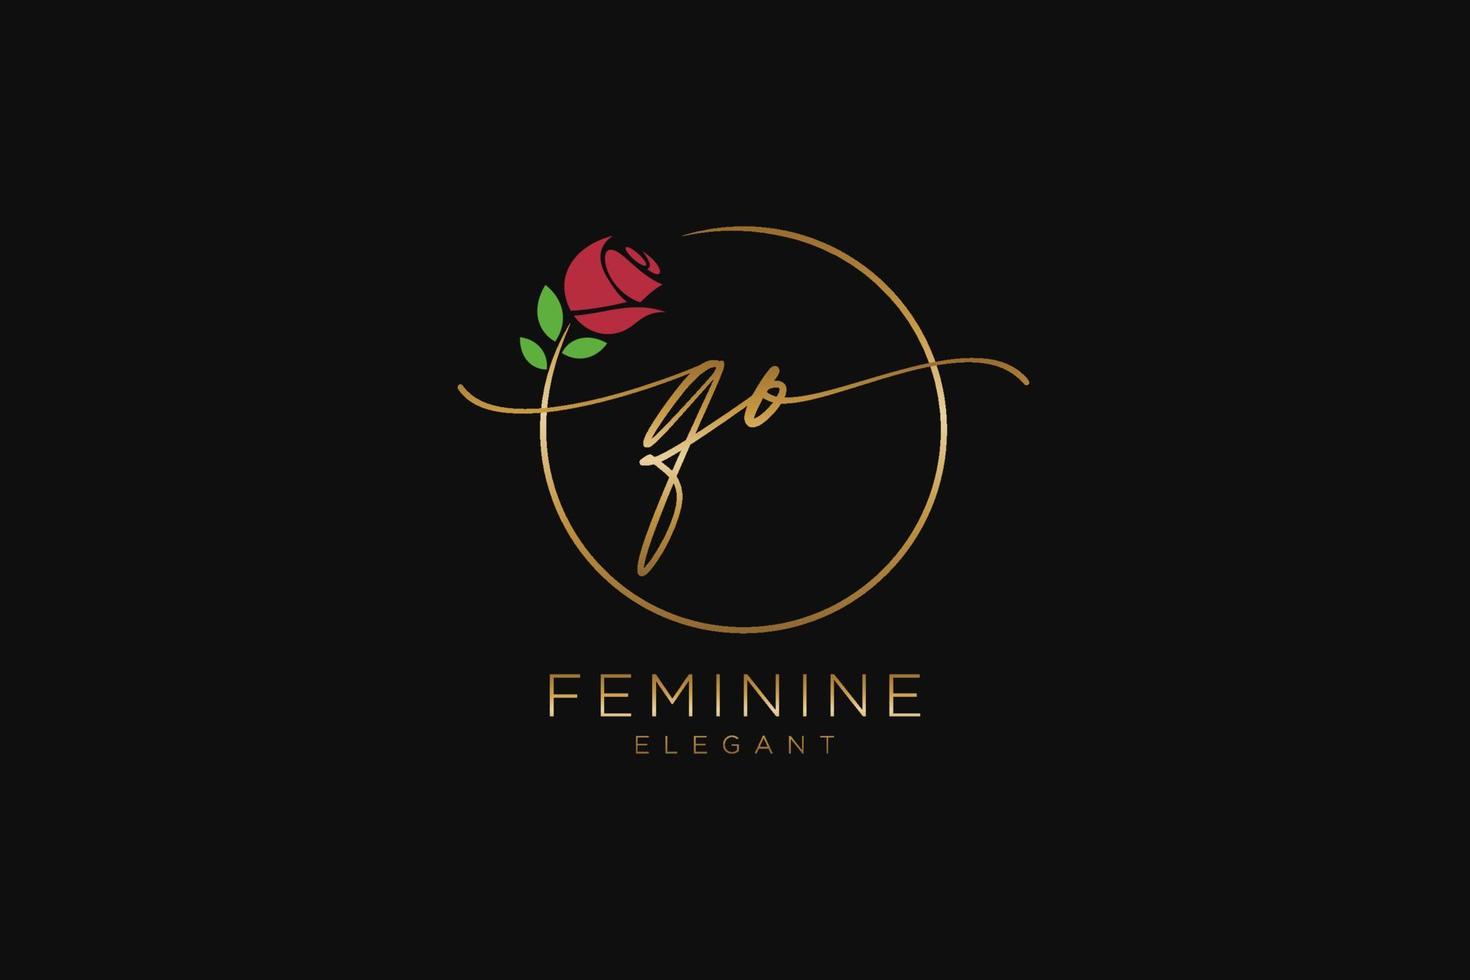 monogramme de beauté du logo féminin initial qo et design élégant du logo, logo manuscrit de la signature initiale, mariage, mode, floral et botanique avec modèle créatif. vecteur